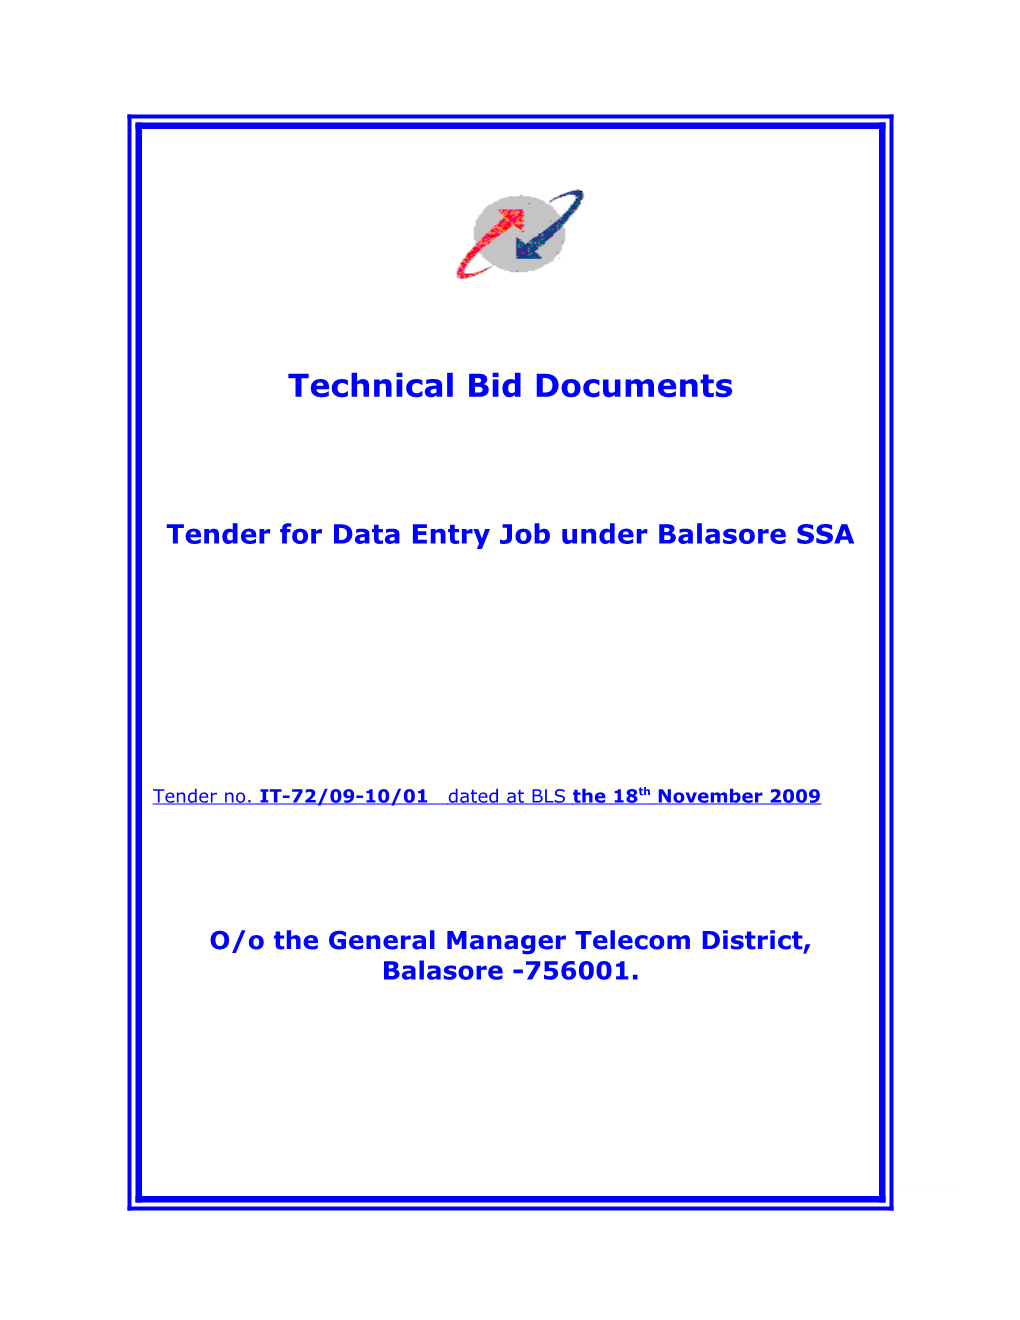 Tender for Data Entry Job Under Balasore SSA